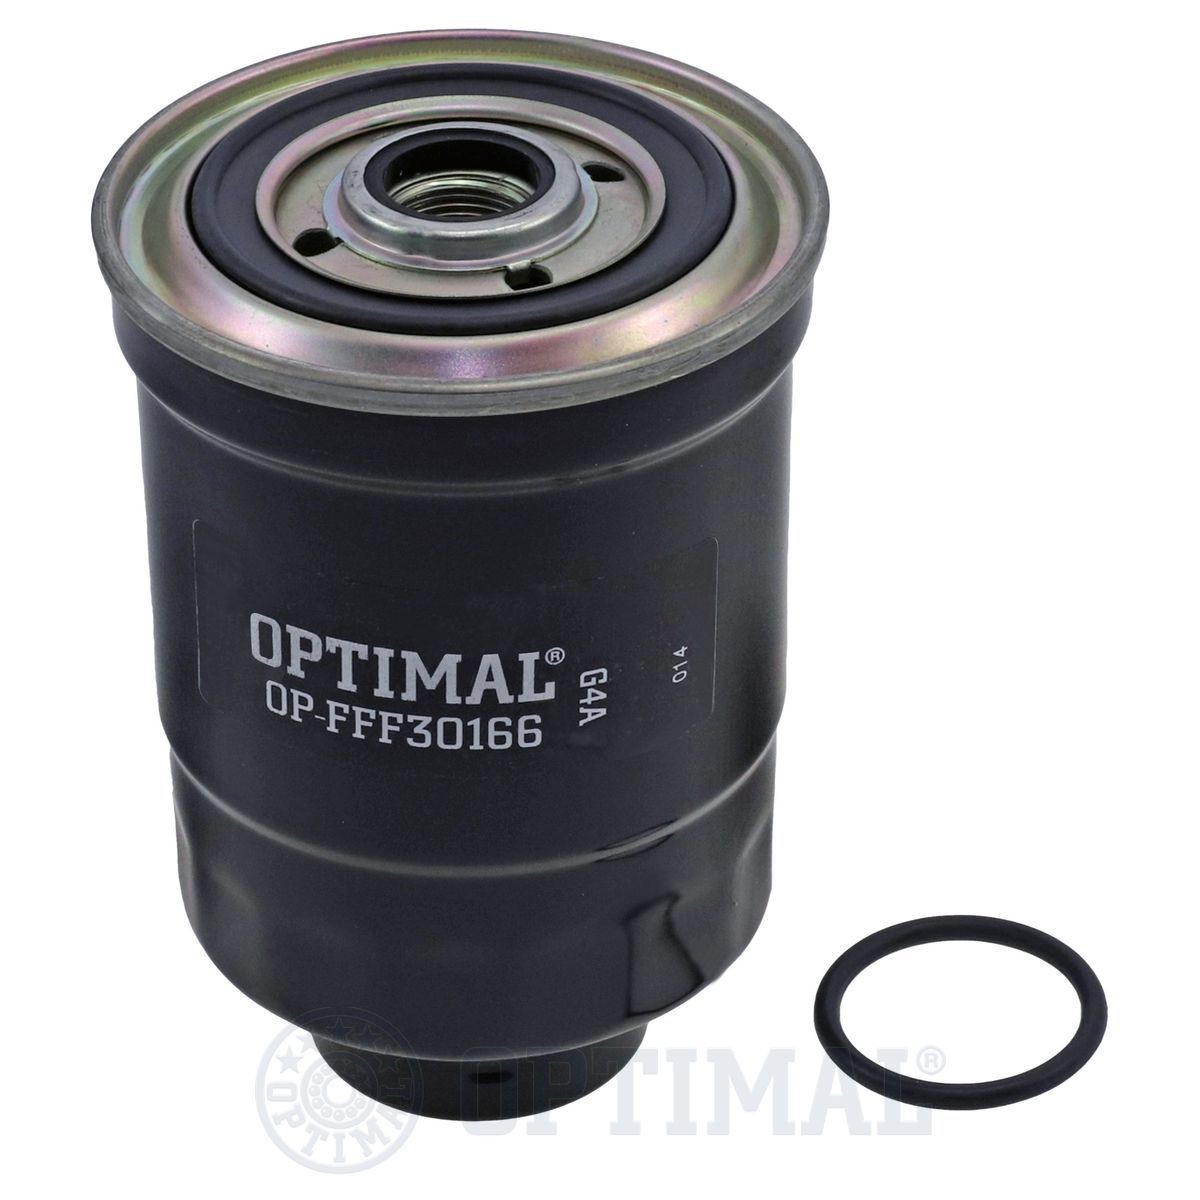 OPTIMAL OP-FFF30166 Fuel filter 1456-23-570A 9A